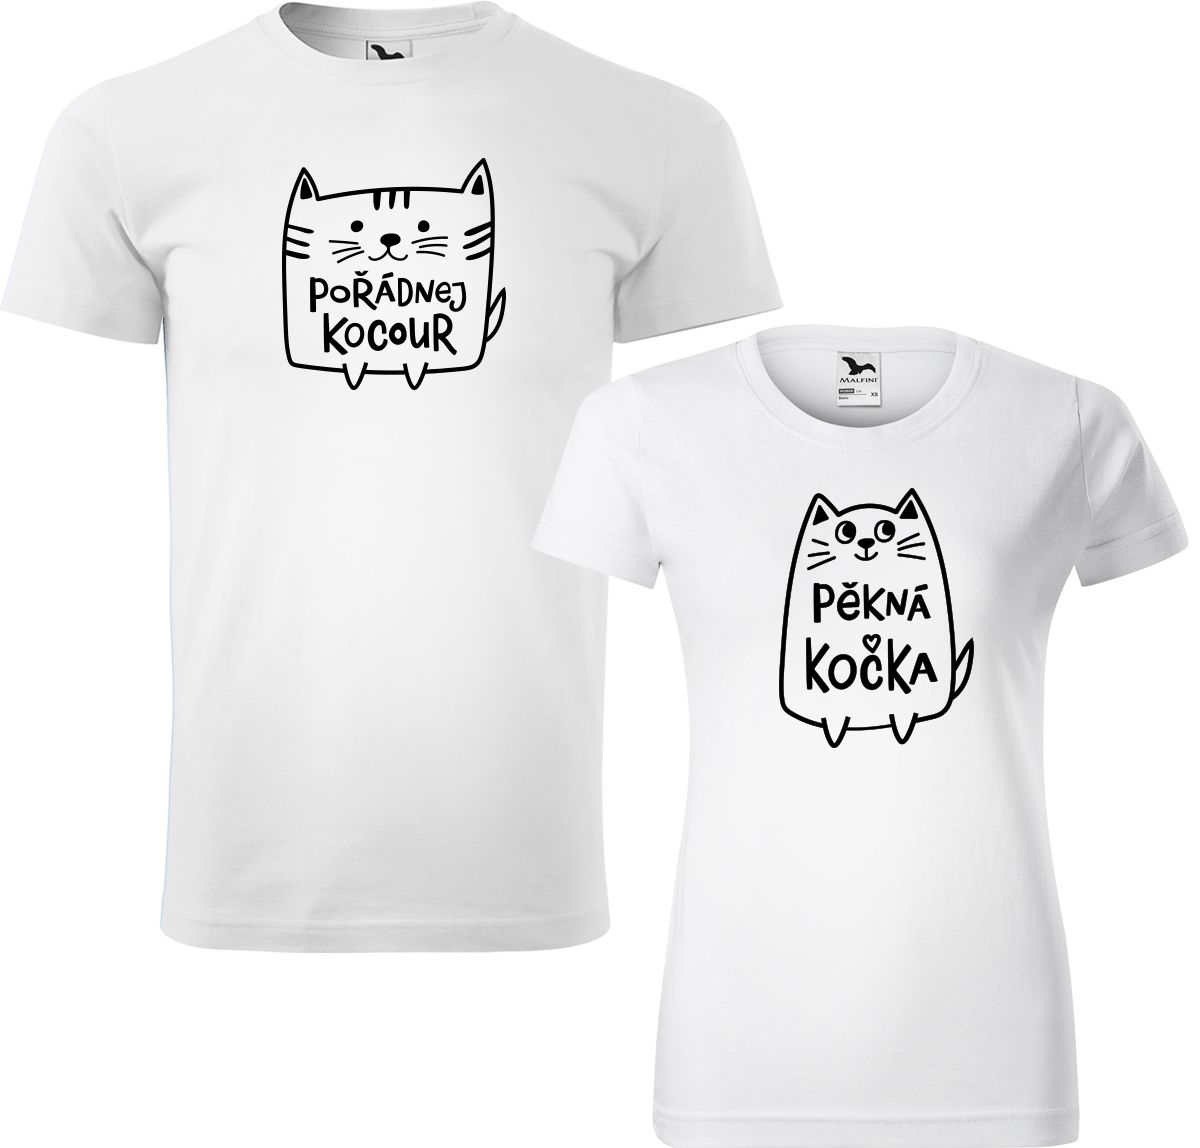 Trička pro páry - Pořádnej kocour a pěkná kočka Barva: Bílá (00), Velikost dámské tričko: S, Velikost pánské tričko: L